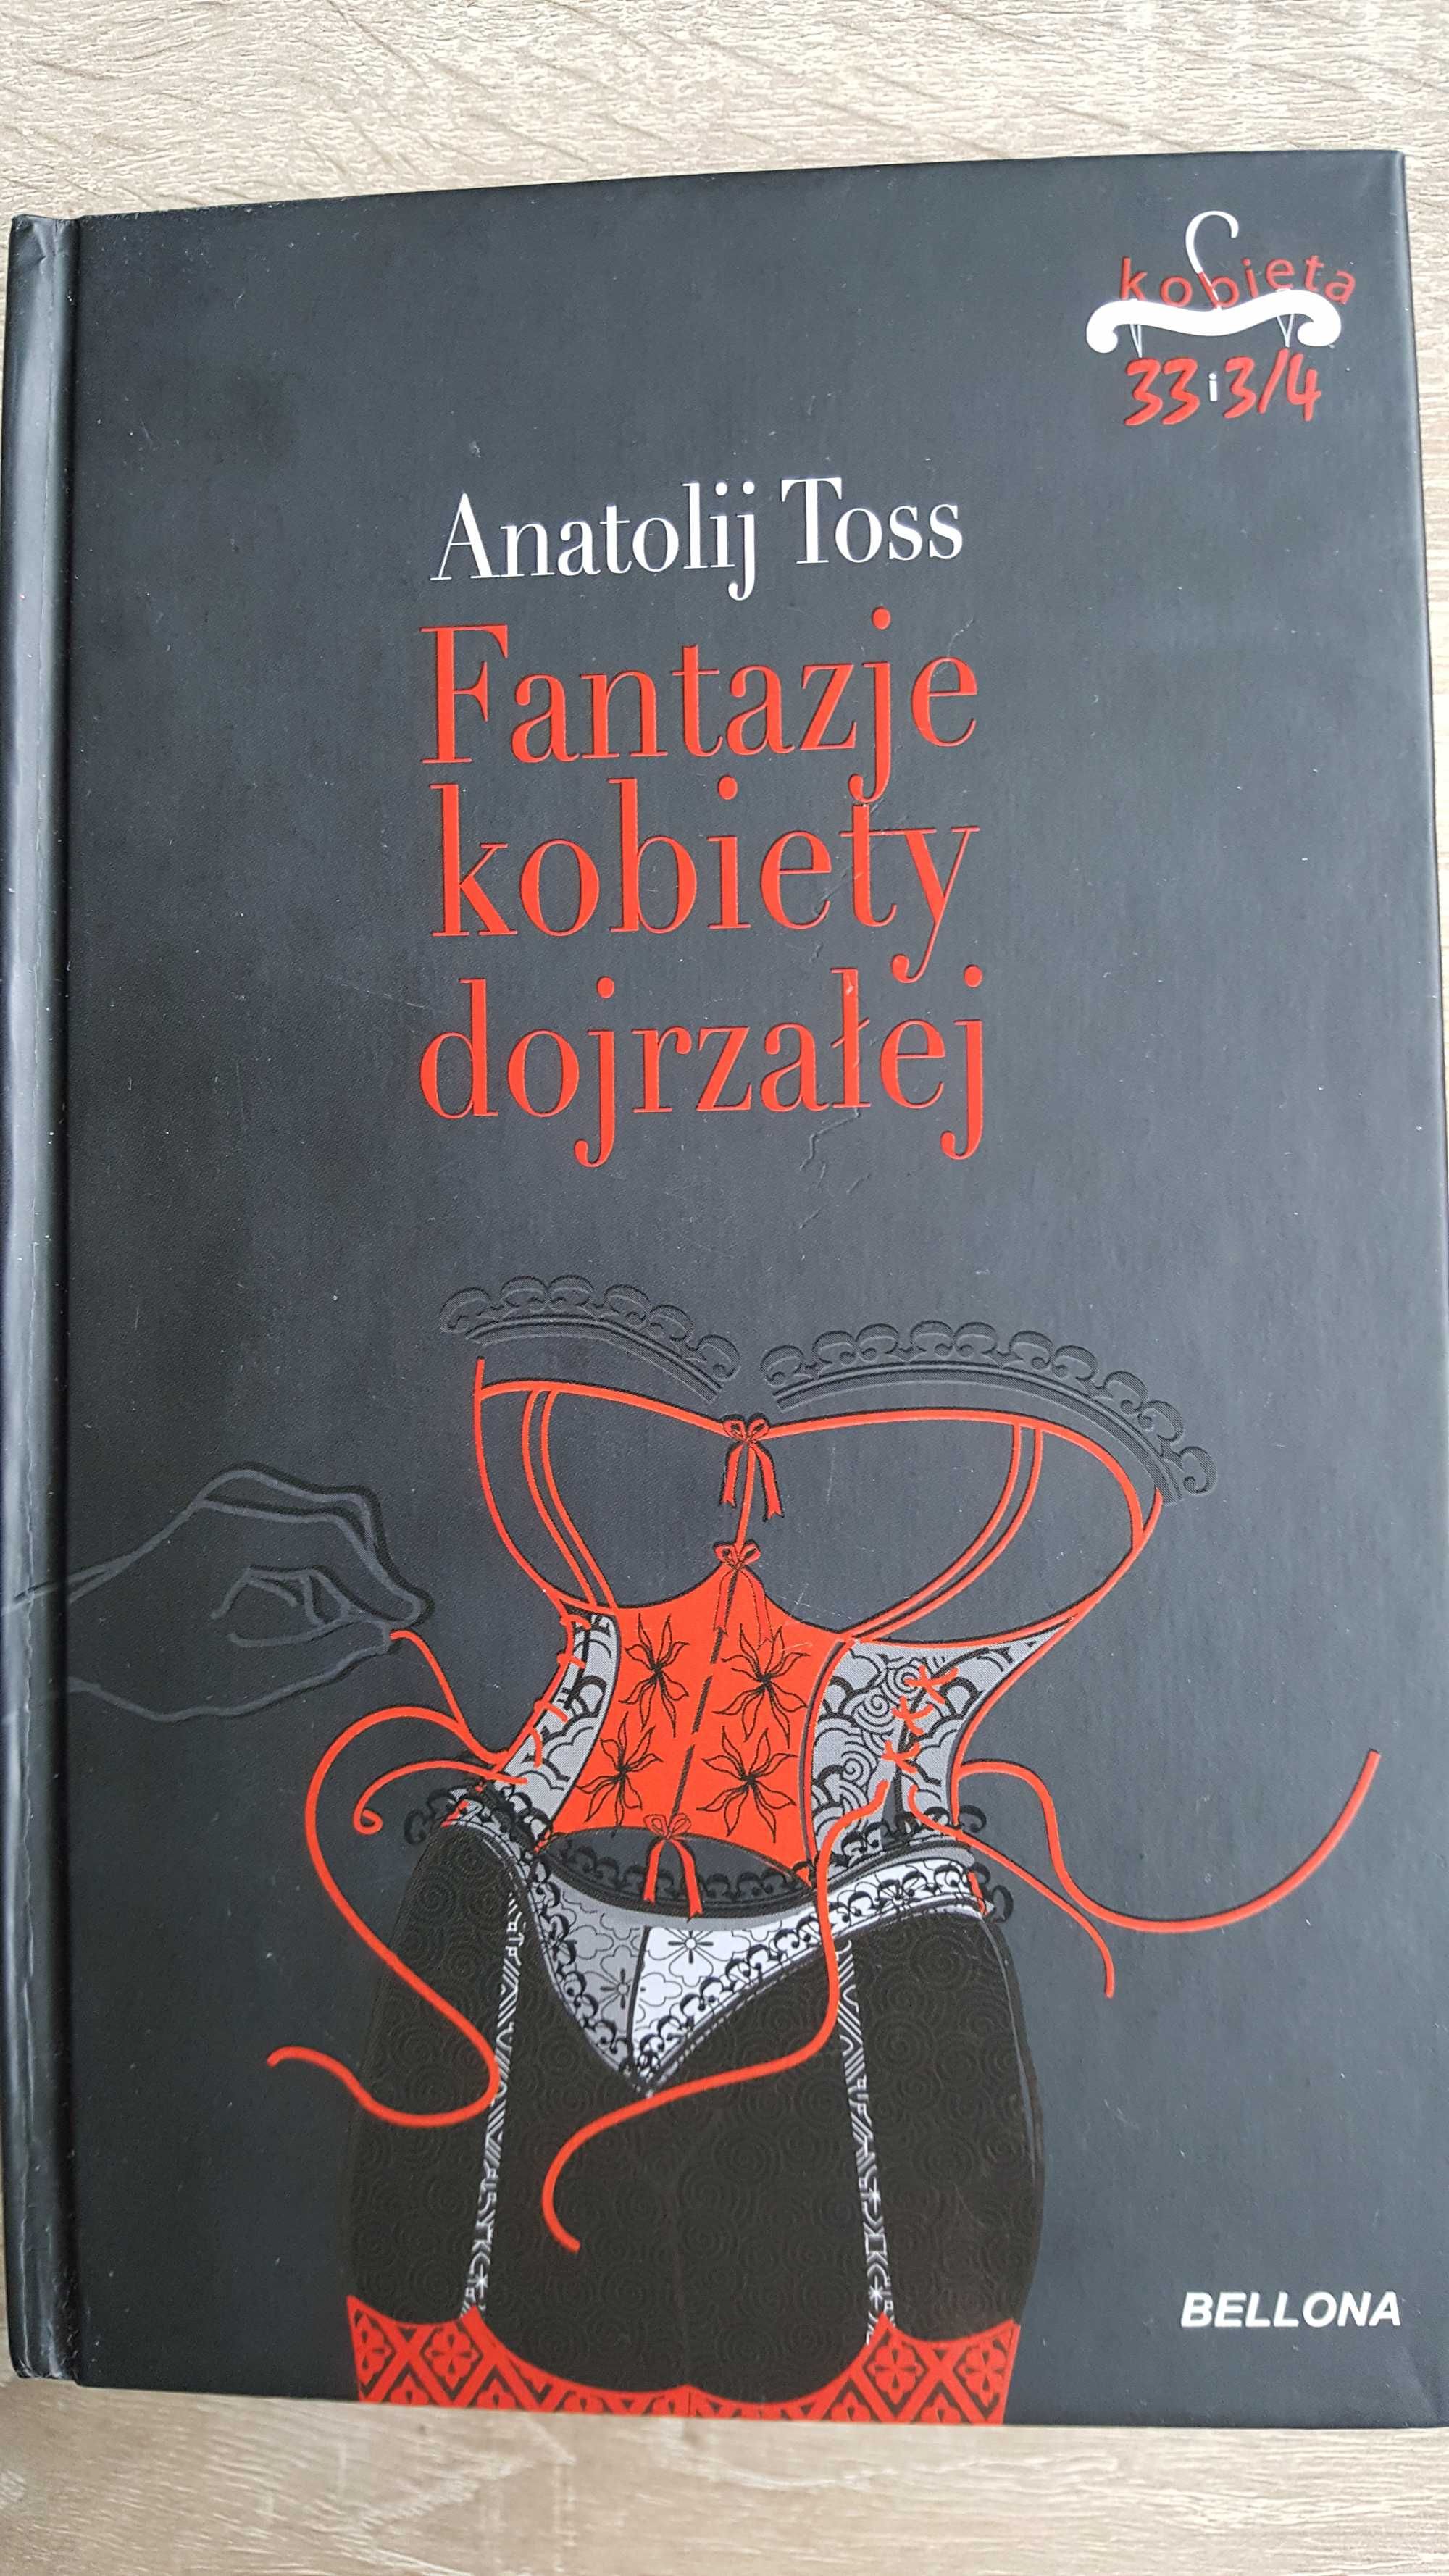 Książka Anatolij Toss "Fantazje kobiety dojrzałej"